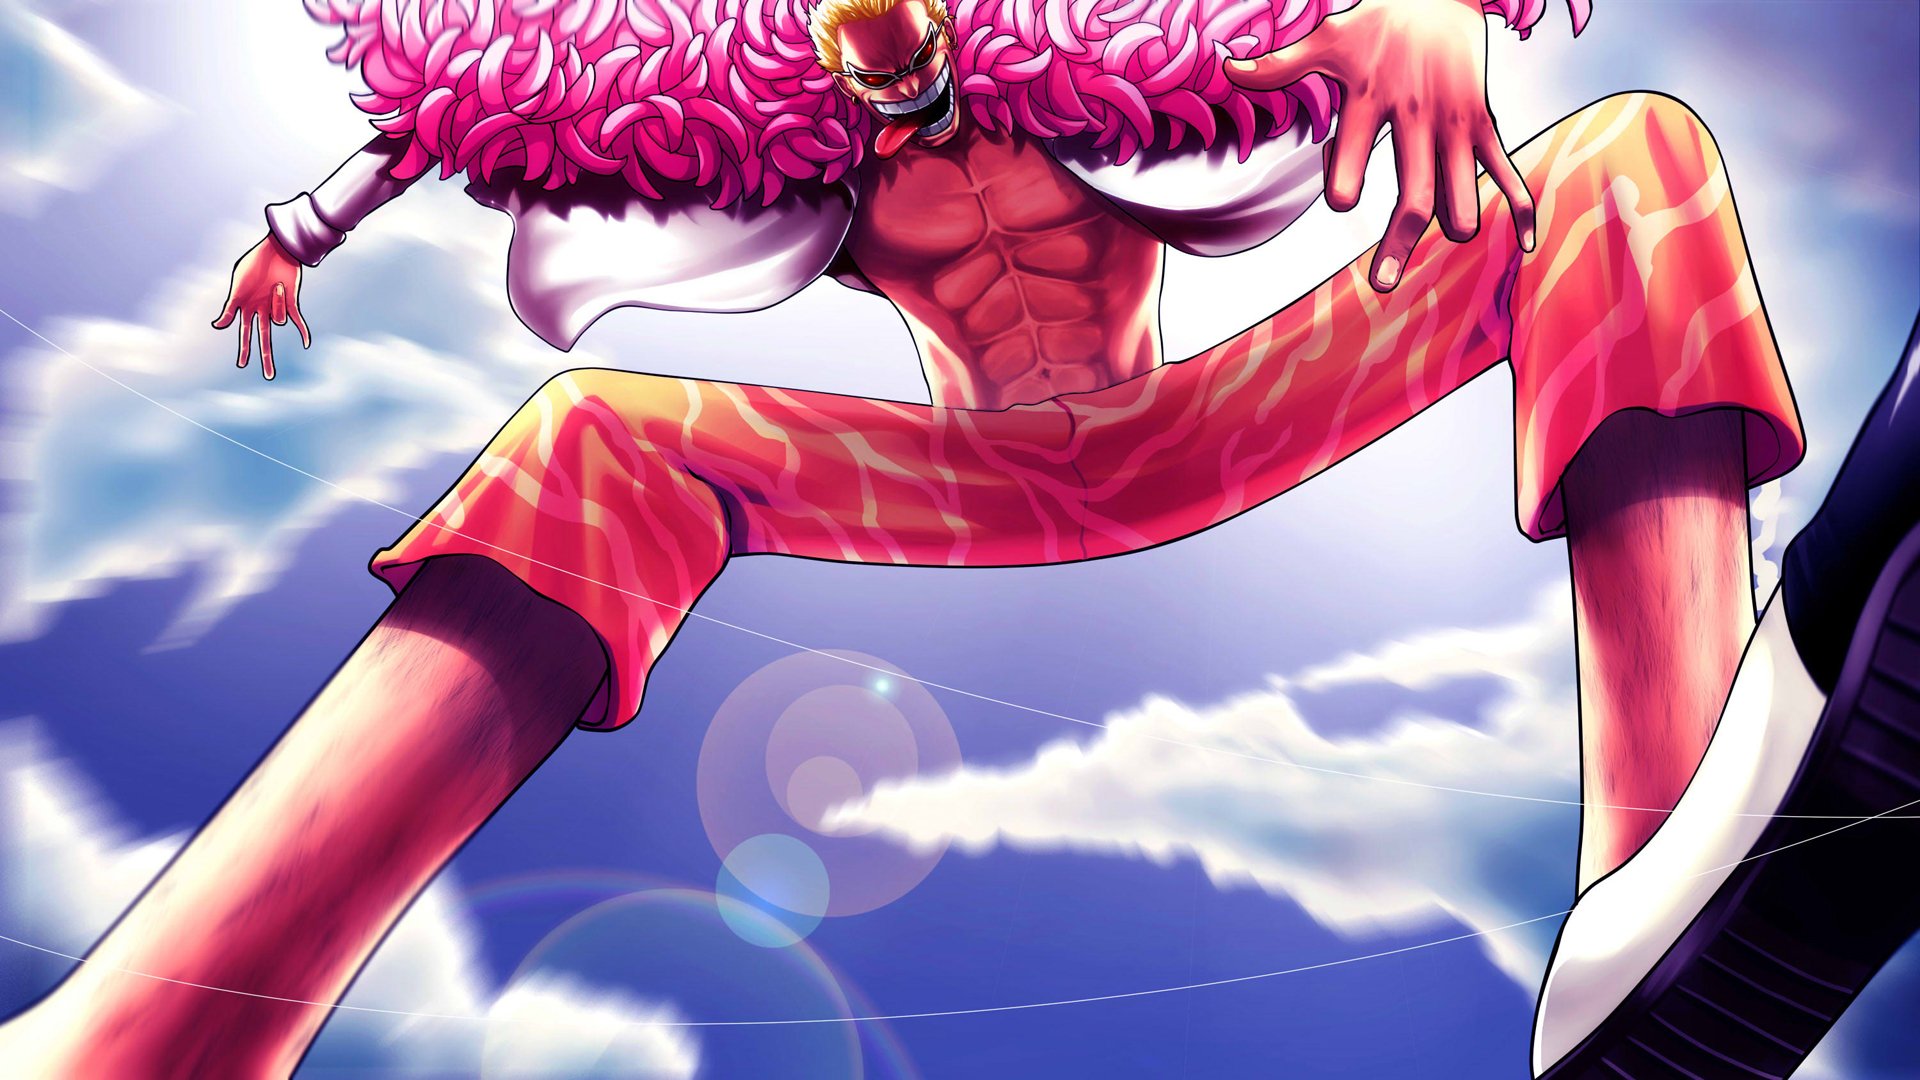 Đóng vai trò là nhân vật phản diện của One Piece, Donquixote Doflamingo là một trong những nhân vật được yêu thích bậc nhất trong bộ truyện này. Bộ sưu tập ảnh nền với chủ đề Donquixote Doflamingo HD sẽ đưa bạn đến thế giới One Piece đầy huyền bí và phép thuật.